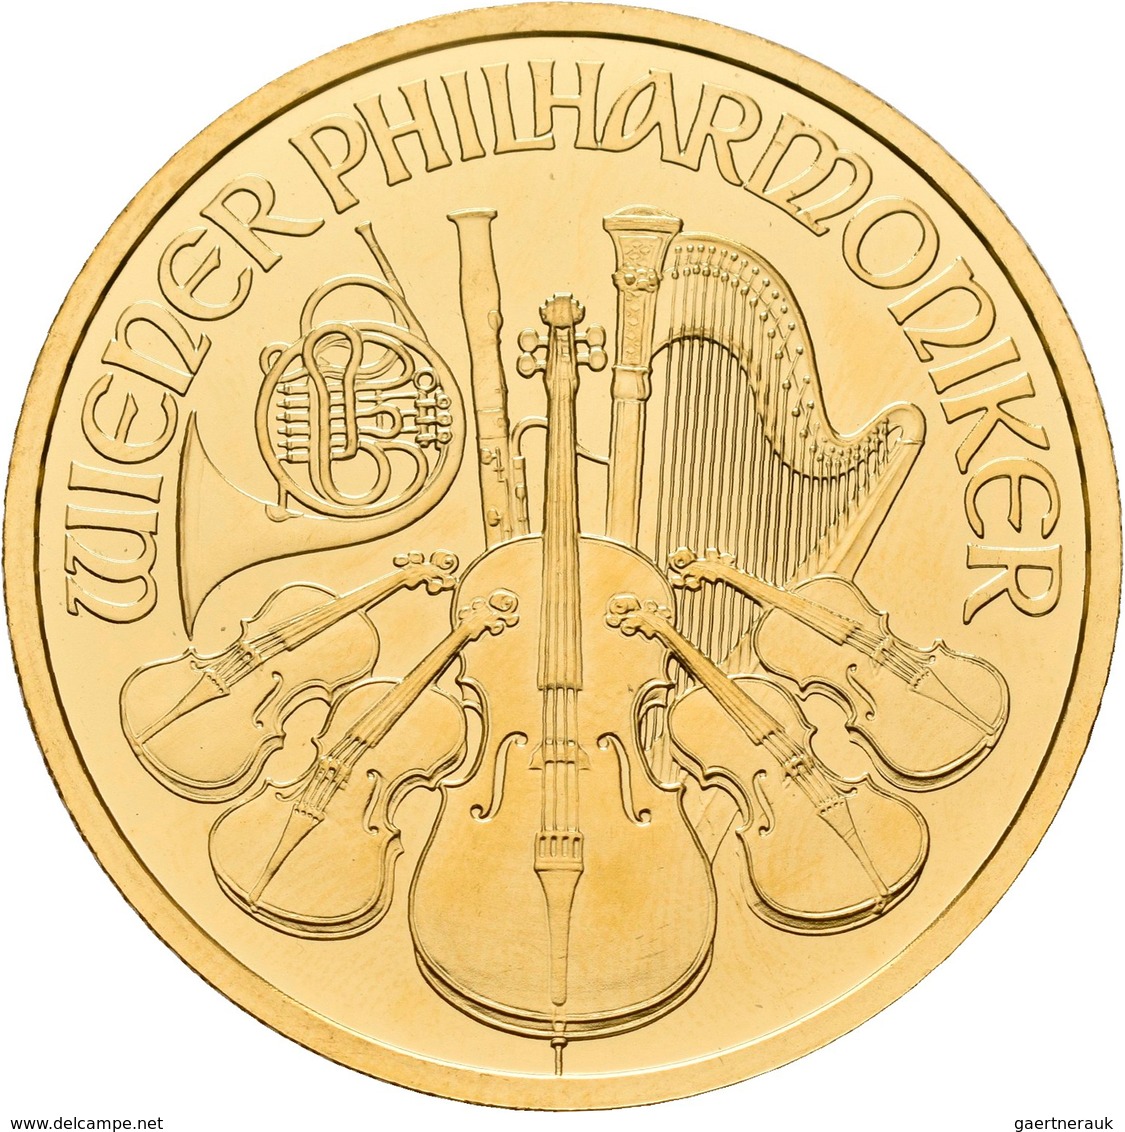 Österreich - Anlagegold: 100 Euro 2009 Wiener Philharmoniker. KM# 3095, Friedberg B5. 31,11 G (1 OZ) - Oesterreich